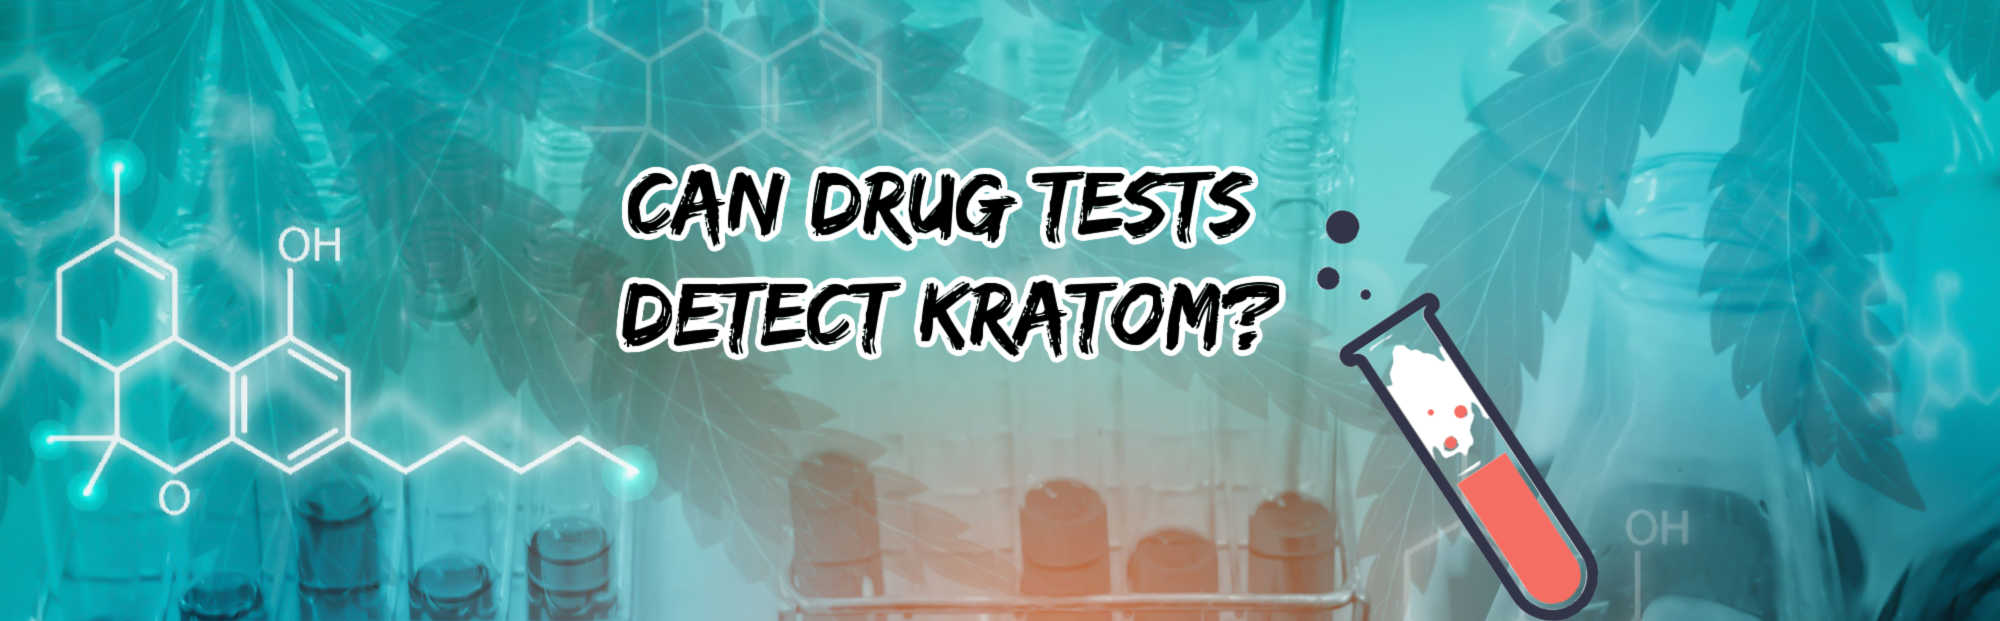 image of can drug test detect kratom